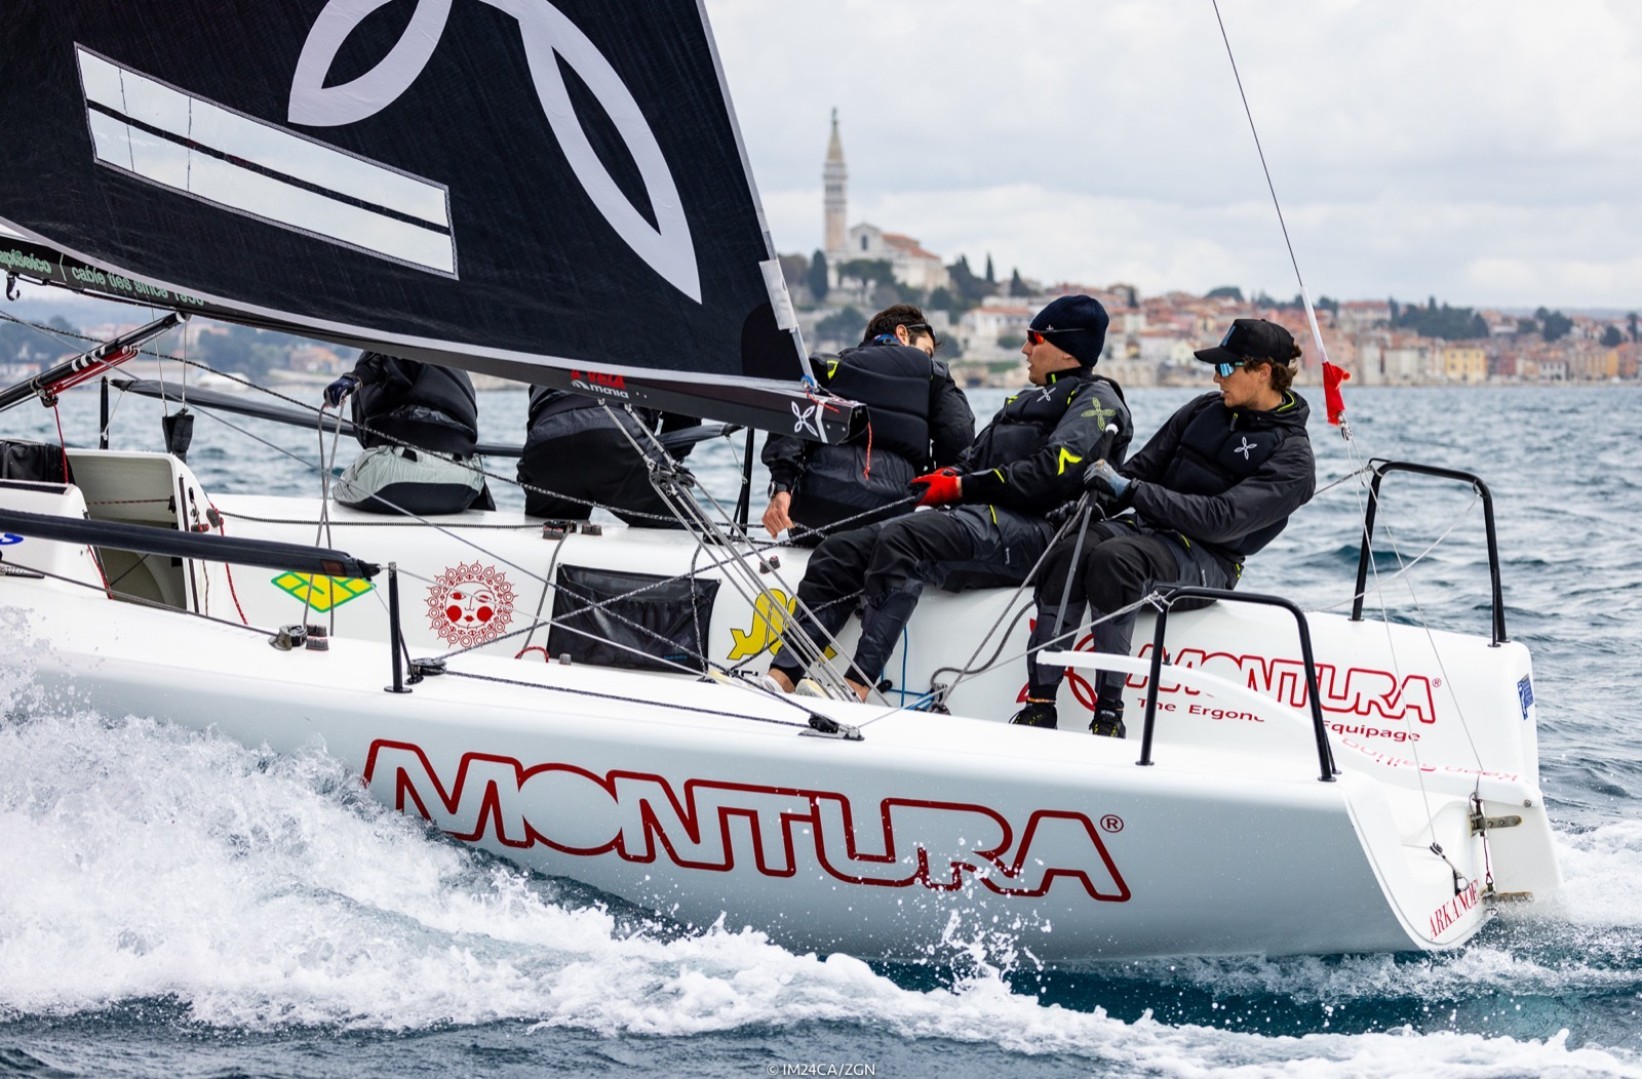 Melges 24 European Sailing Series
Salutata Rovigno Arkanoé by Montura guarda con ottimismo al prosieguo della stagione